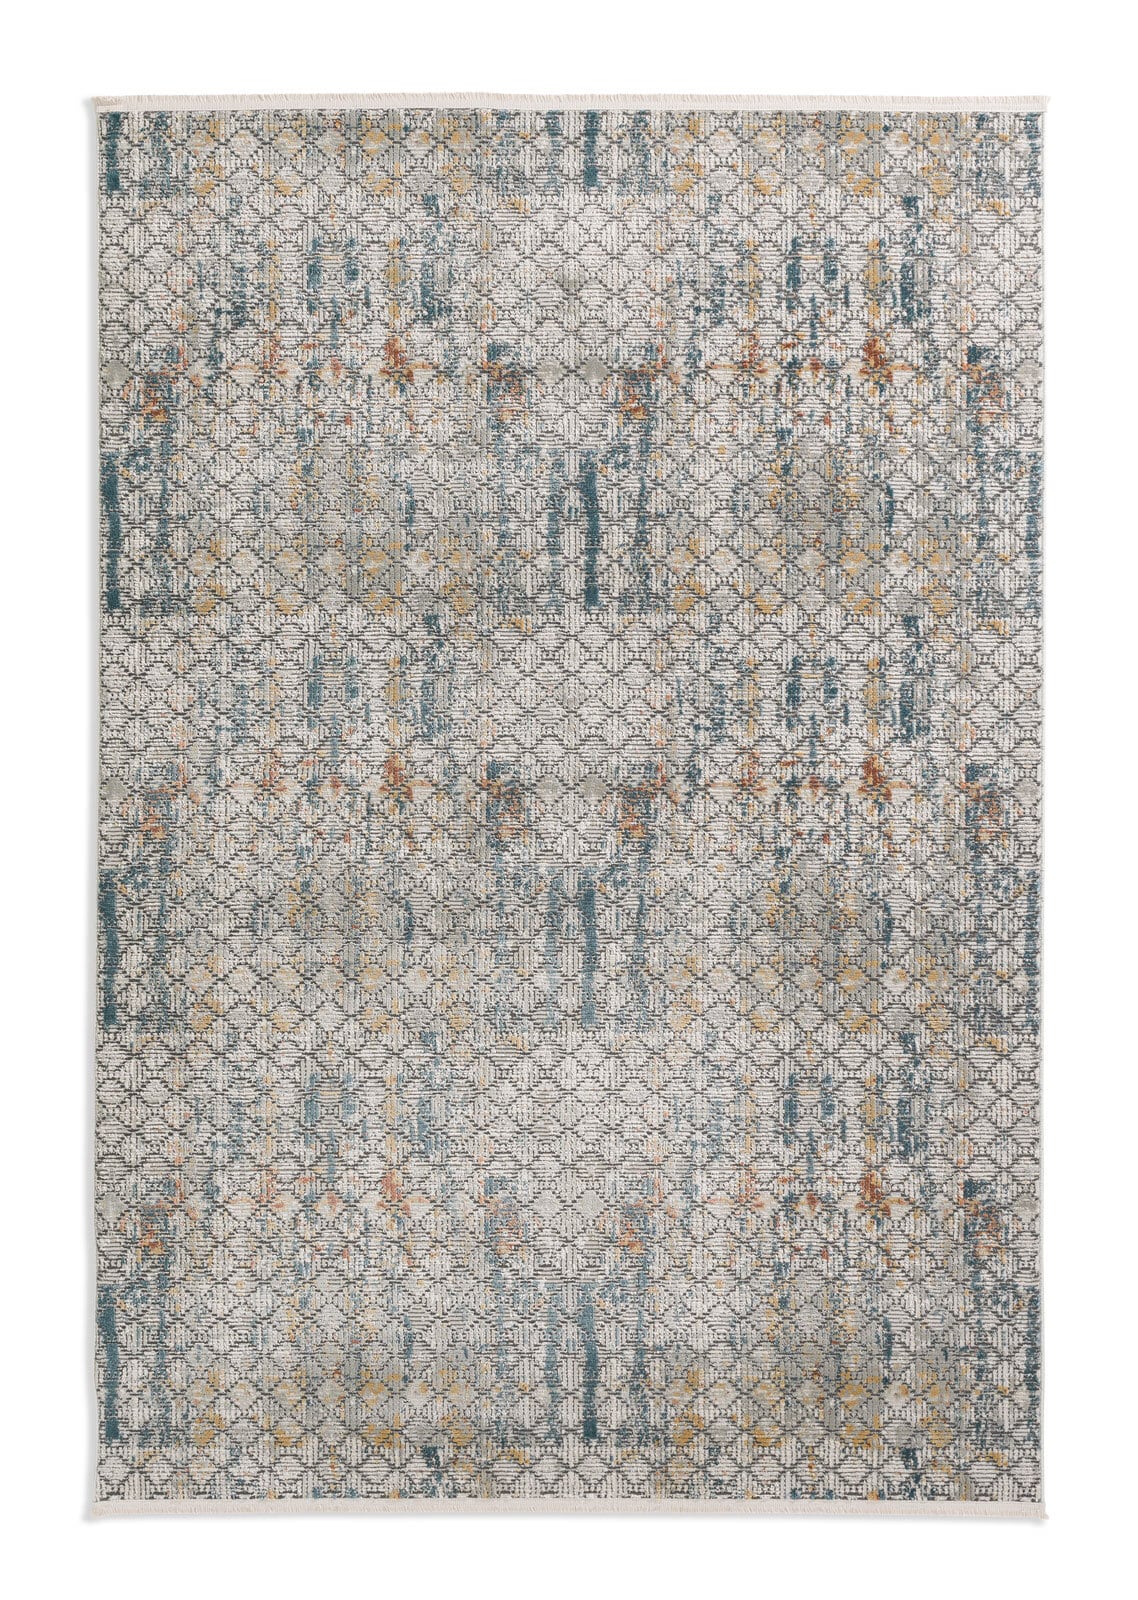 SCHÖNER WOHNEN-Kollektion Teppich ATTRACTION 160 x 230 cm grau/mehrfarbig 